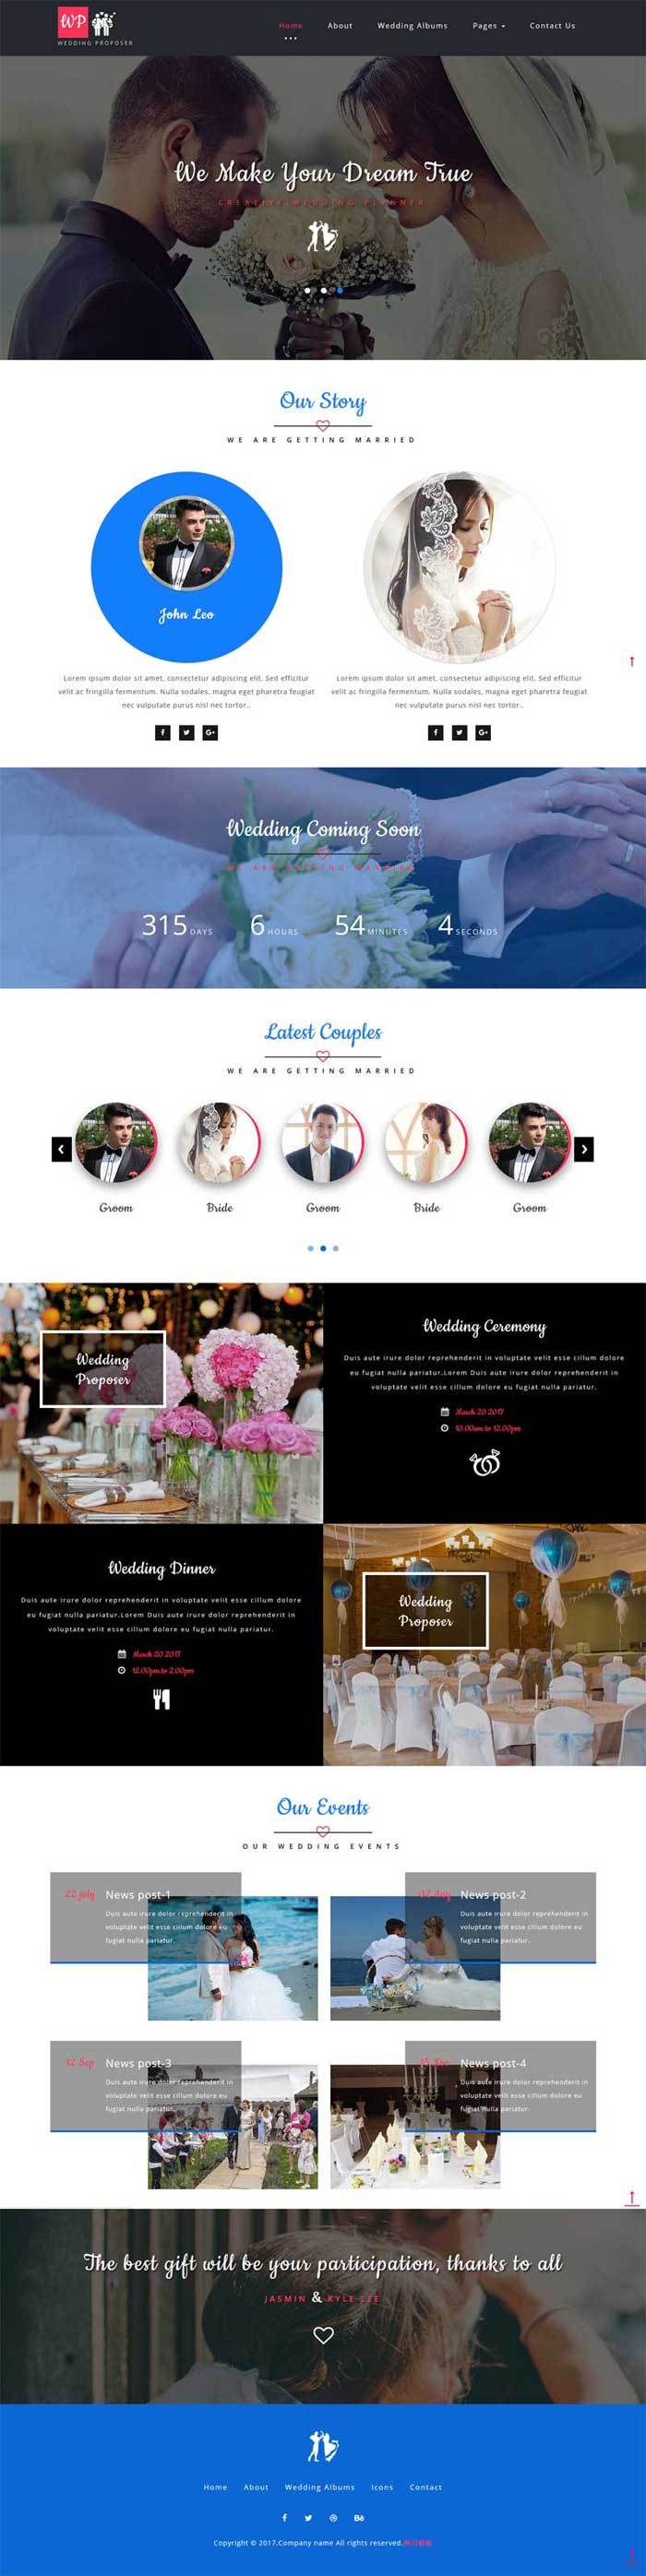 婚纱摄影婚庆公司网站简洁大气风格的模板下载